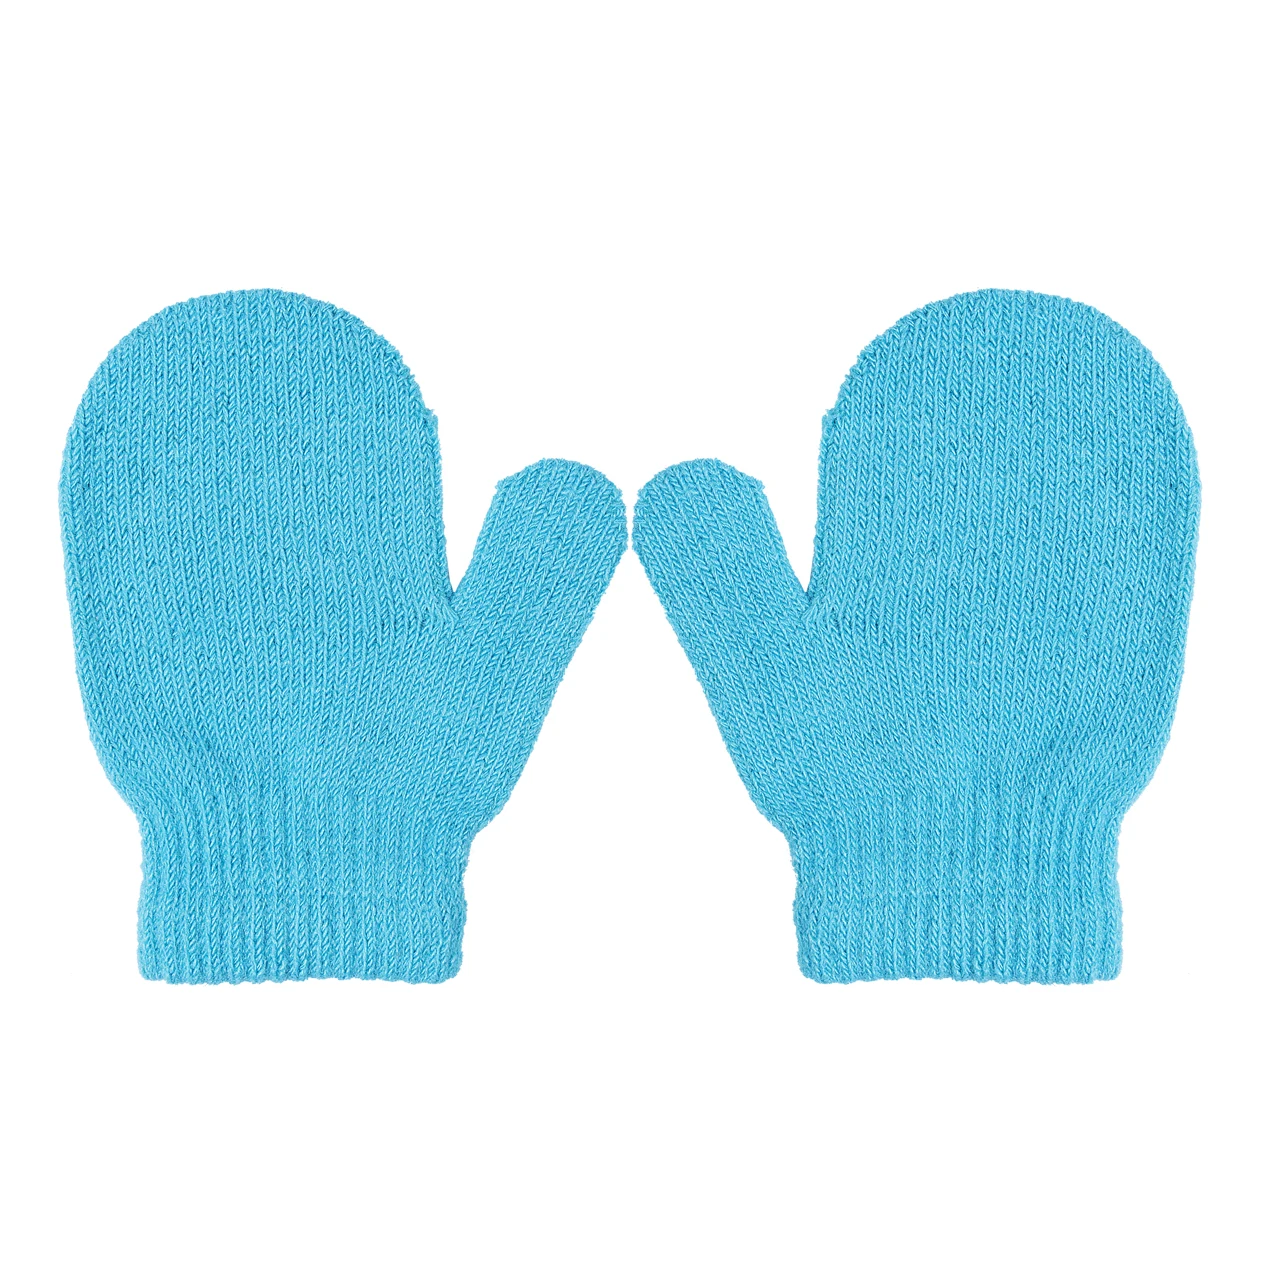 7 цветов, новые брендовые теплые зимние Хлопковые варежки для новорожденных, однотонные зимние детские перчатки для мальчиков и девочек - Цвет: Небесно-голубой